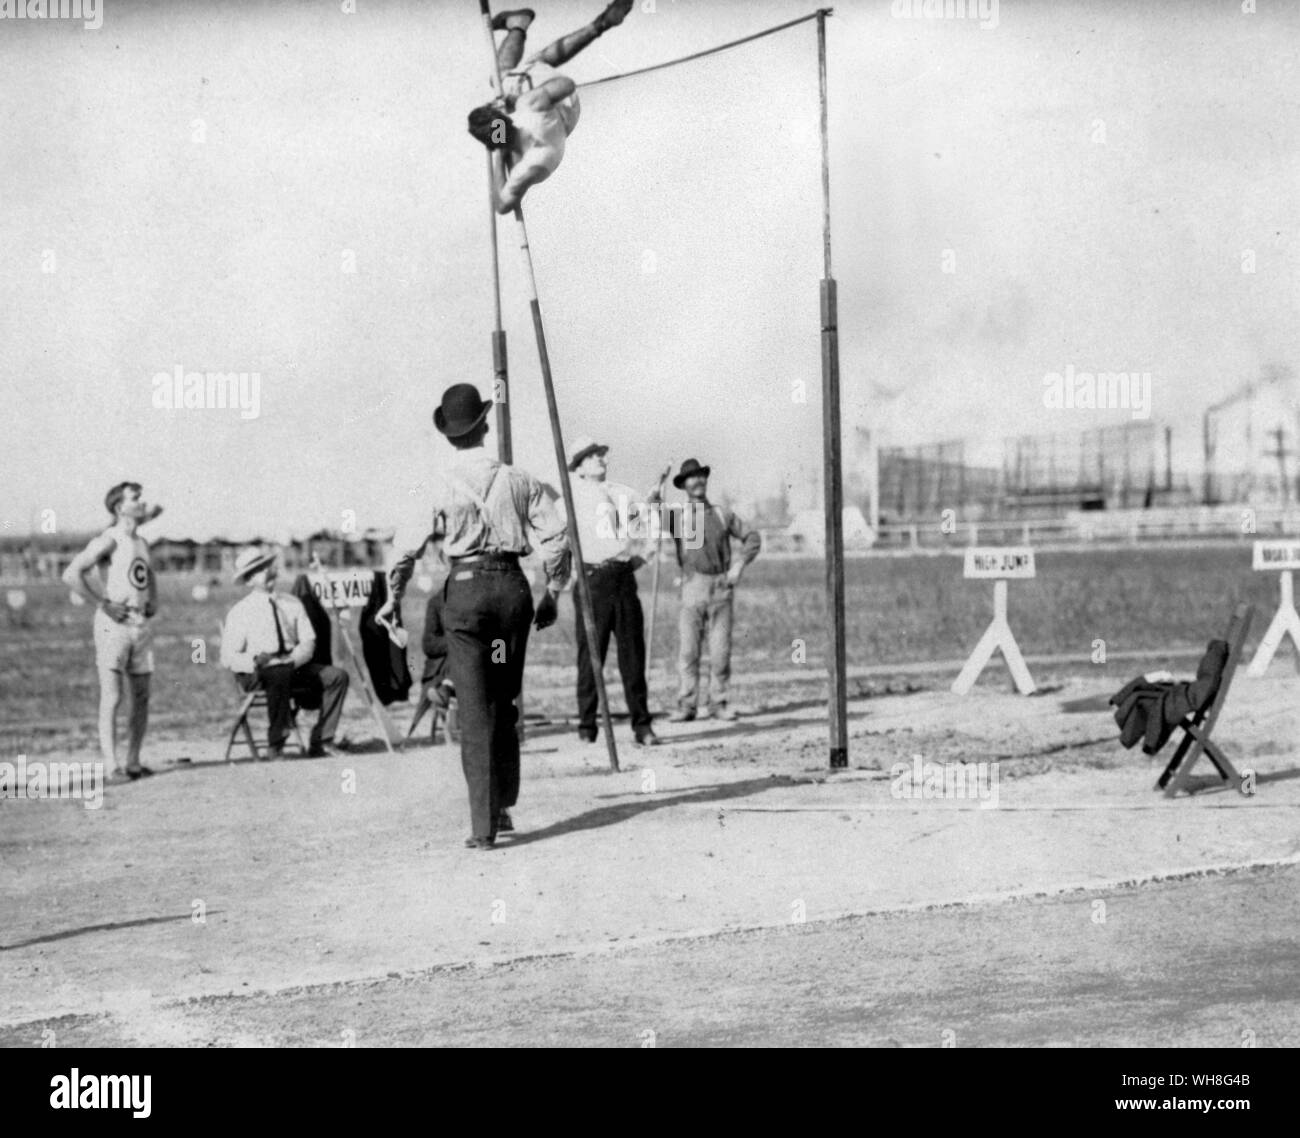 Sieg im Stabhochsprung für Trüssel (USA) bei 3 50 m 11 ft 6 in auf der Weltausstellung Olympische Spiele, St. Louis, 1904. Die Olympischen Spiele Seite 54. Stockfoto